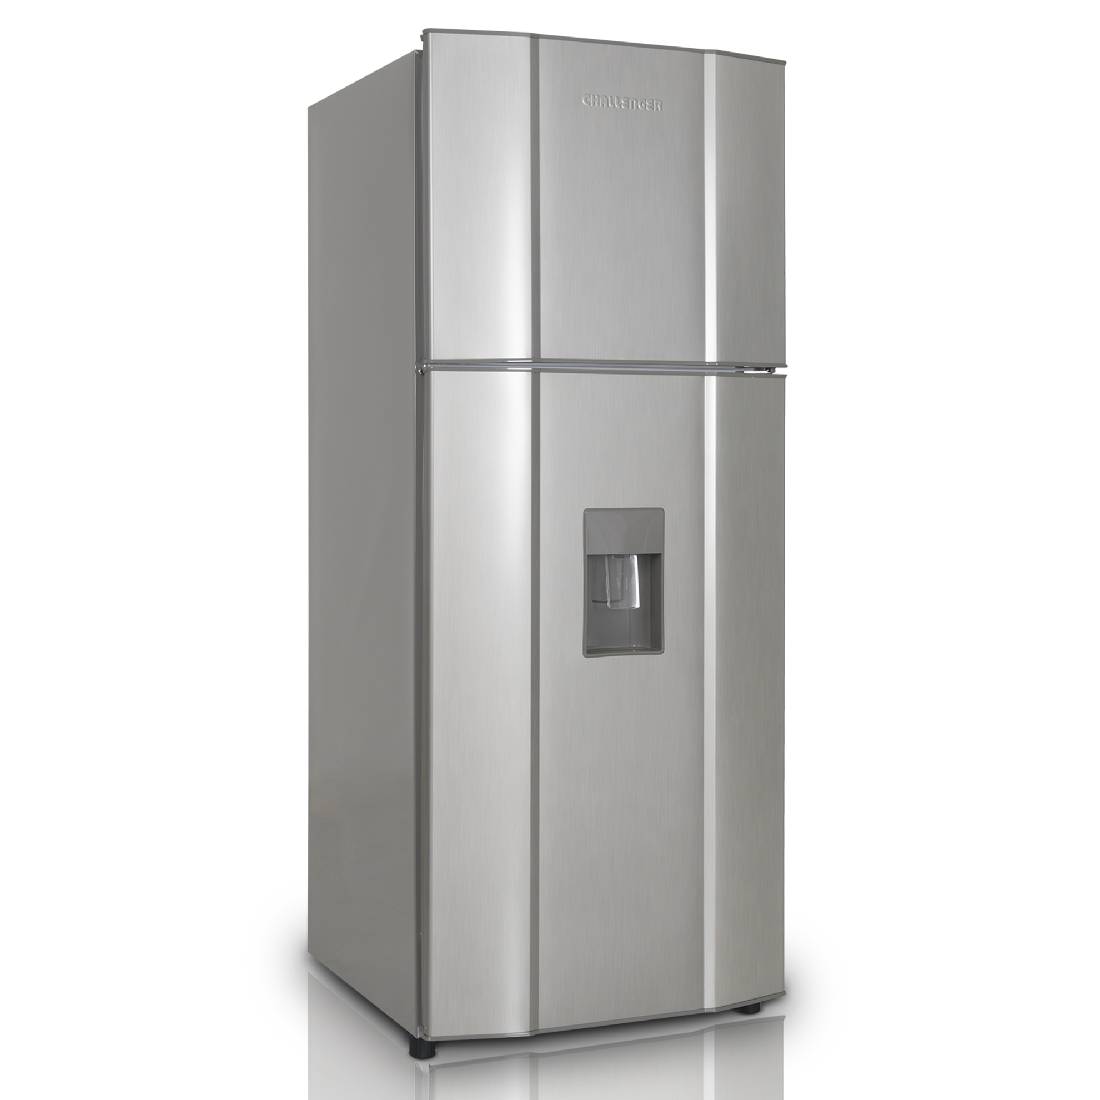 Refrigeradora CHALLENGER CR312 No Frost Gris sin Acrílico 232 Litros